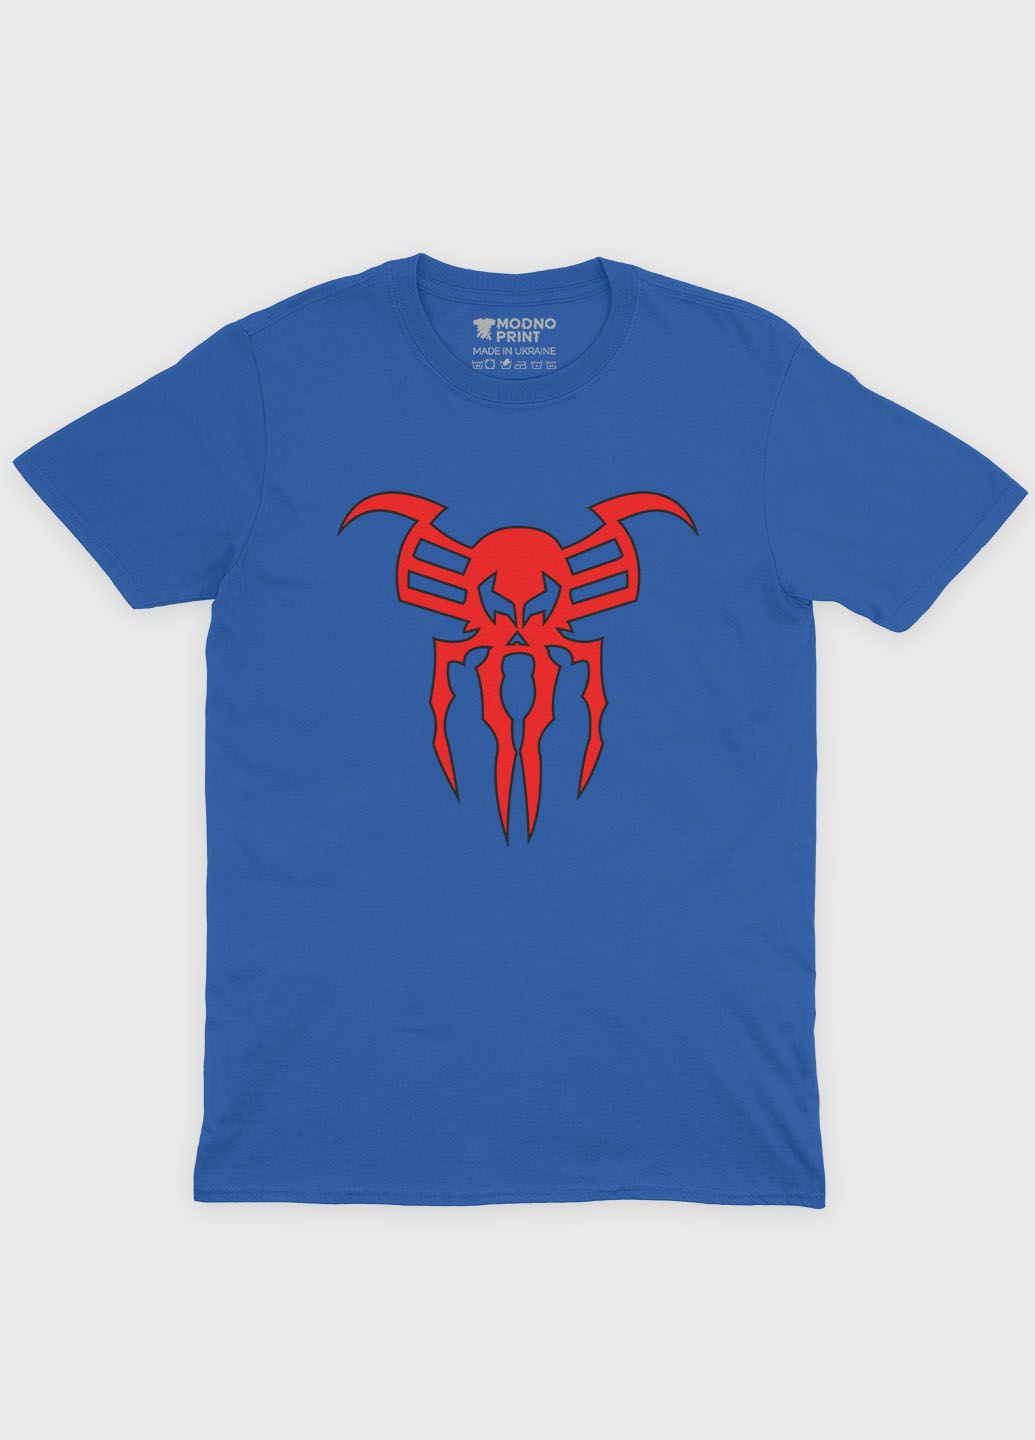 Синяя демисезонная футболка для мальчика с принтом супергероя - человек-паук (ts001-1-brr-006-014-110-b) Modno